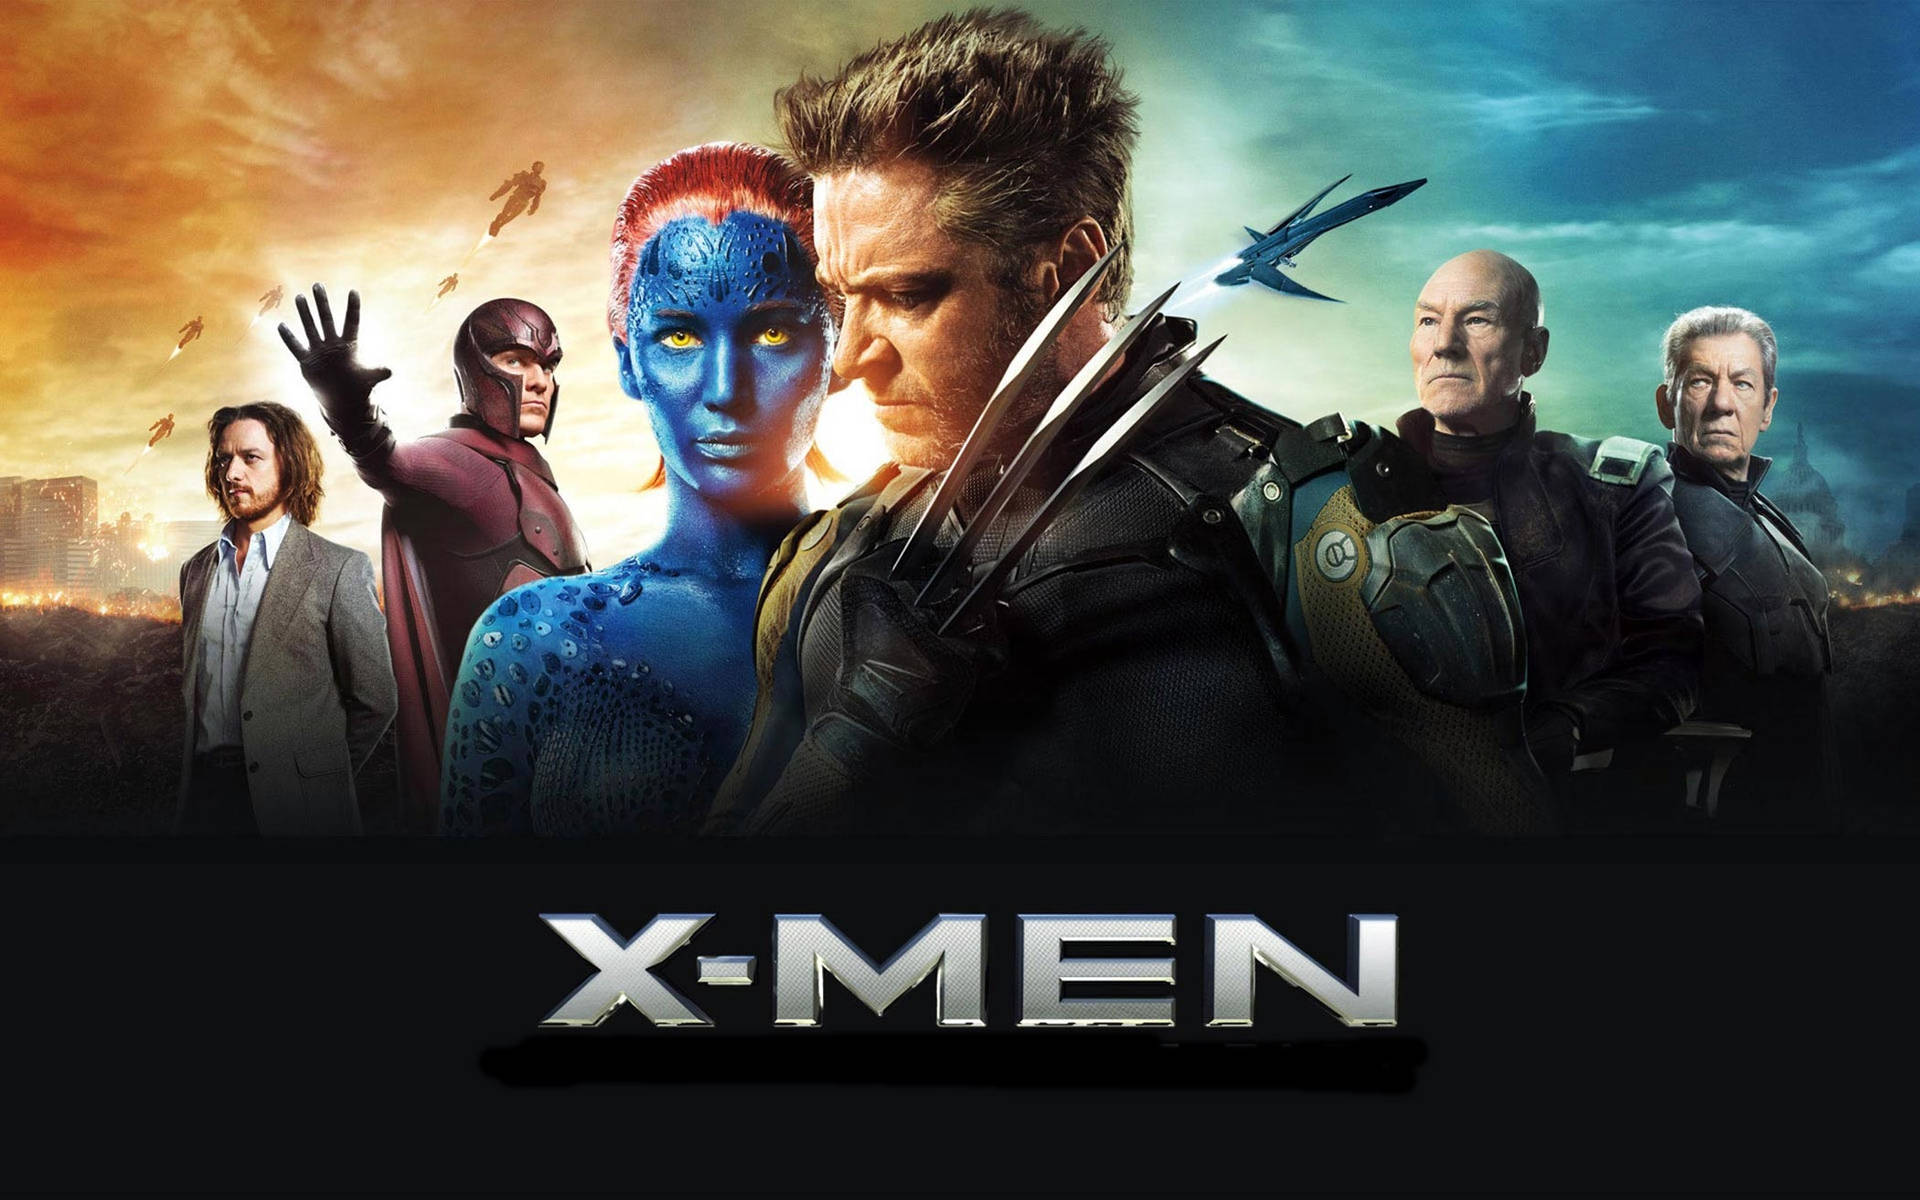 Filmernax-men: Days Of Future Past Och Wolverine. Wallpaper